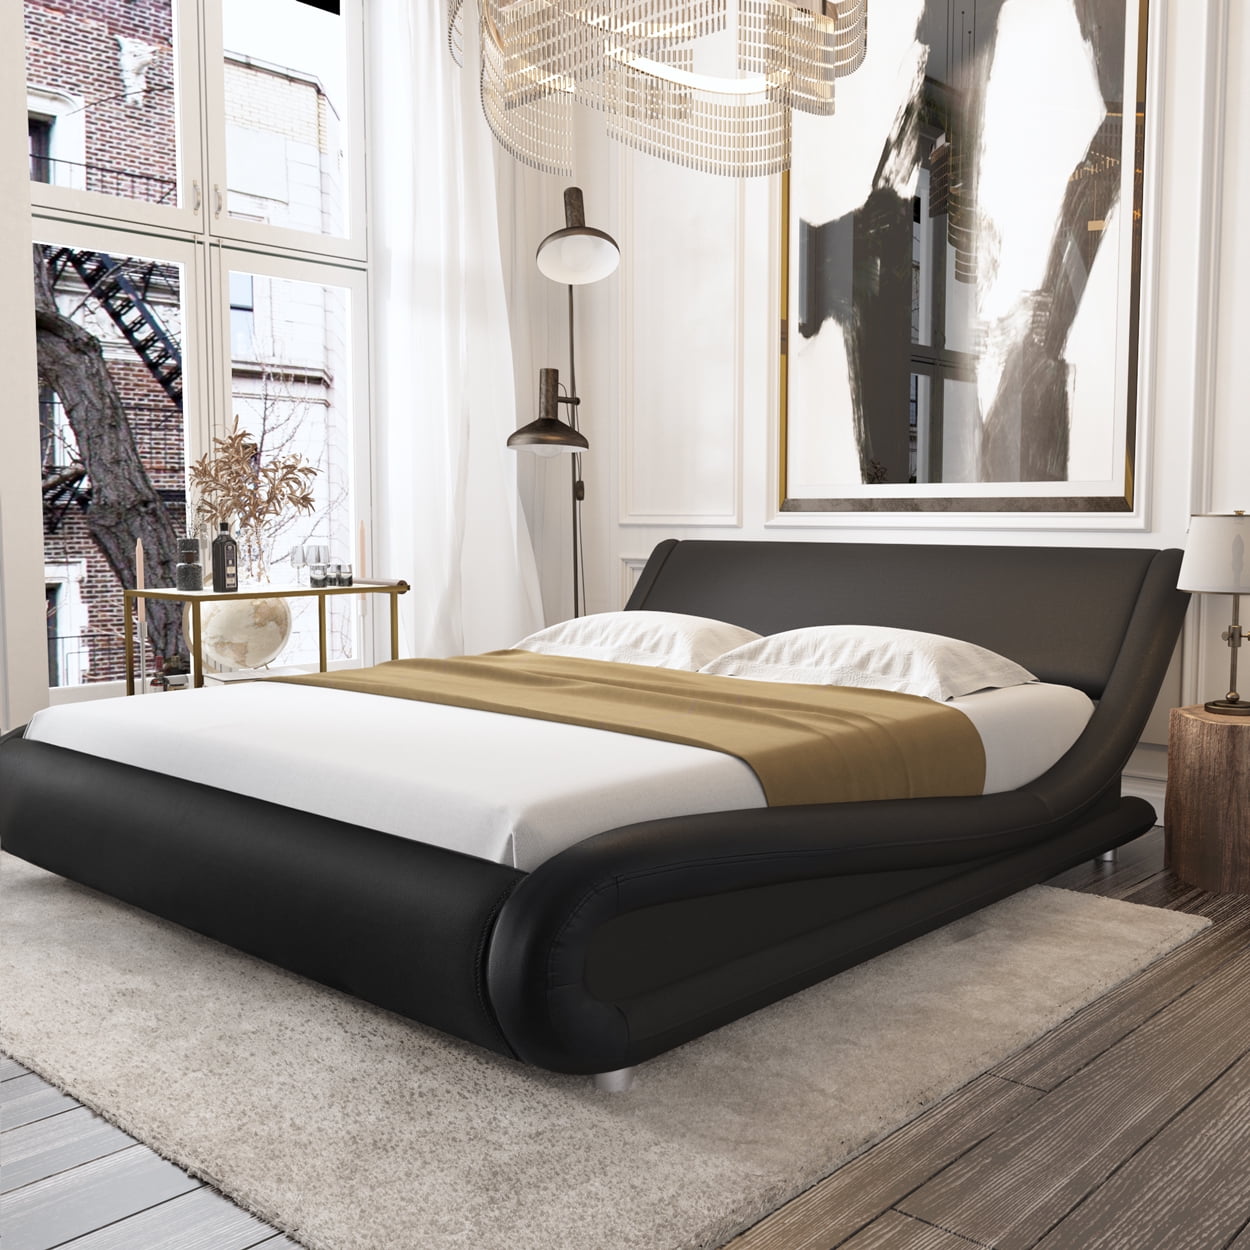 Amolife King Size Bed Frame With Curved, Black King Platform Bed Frame